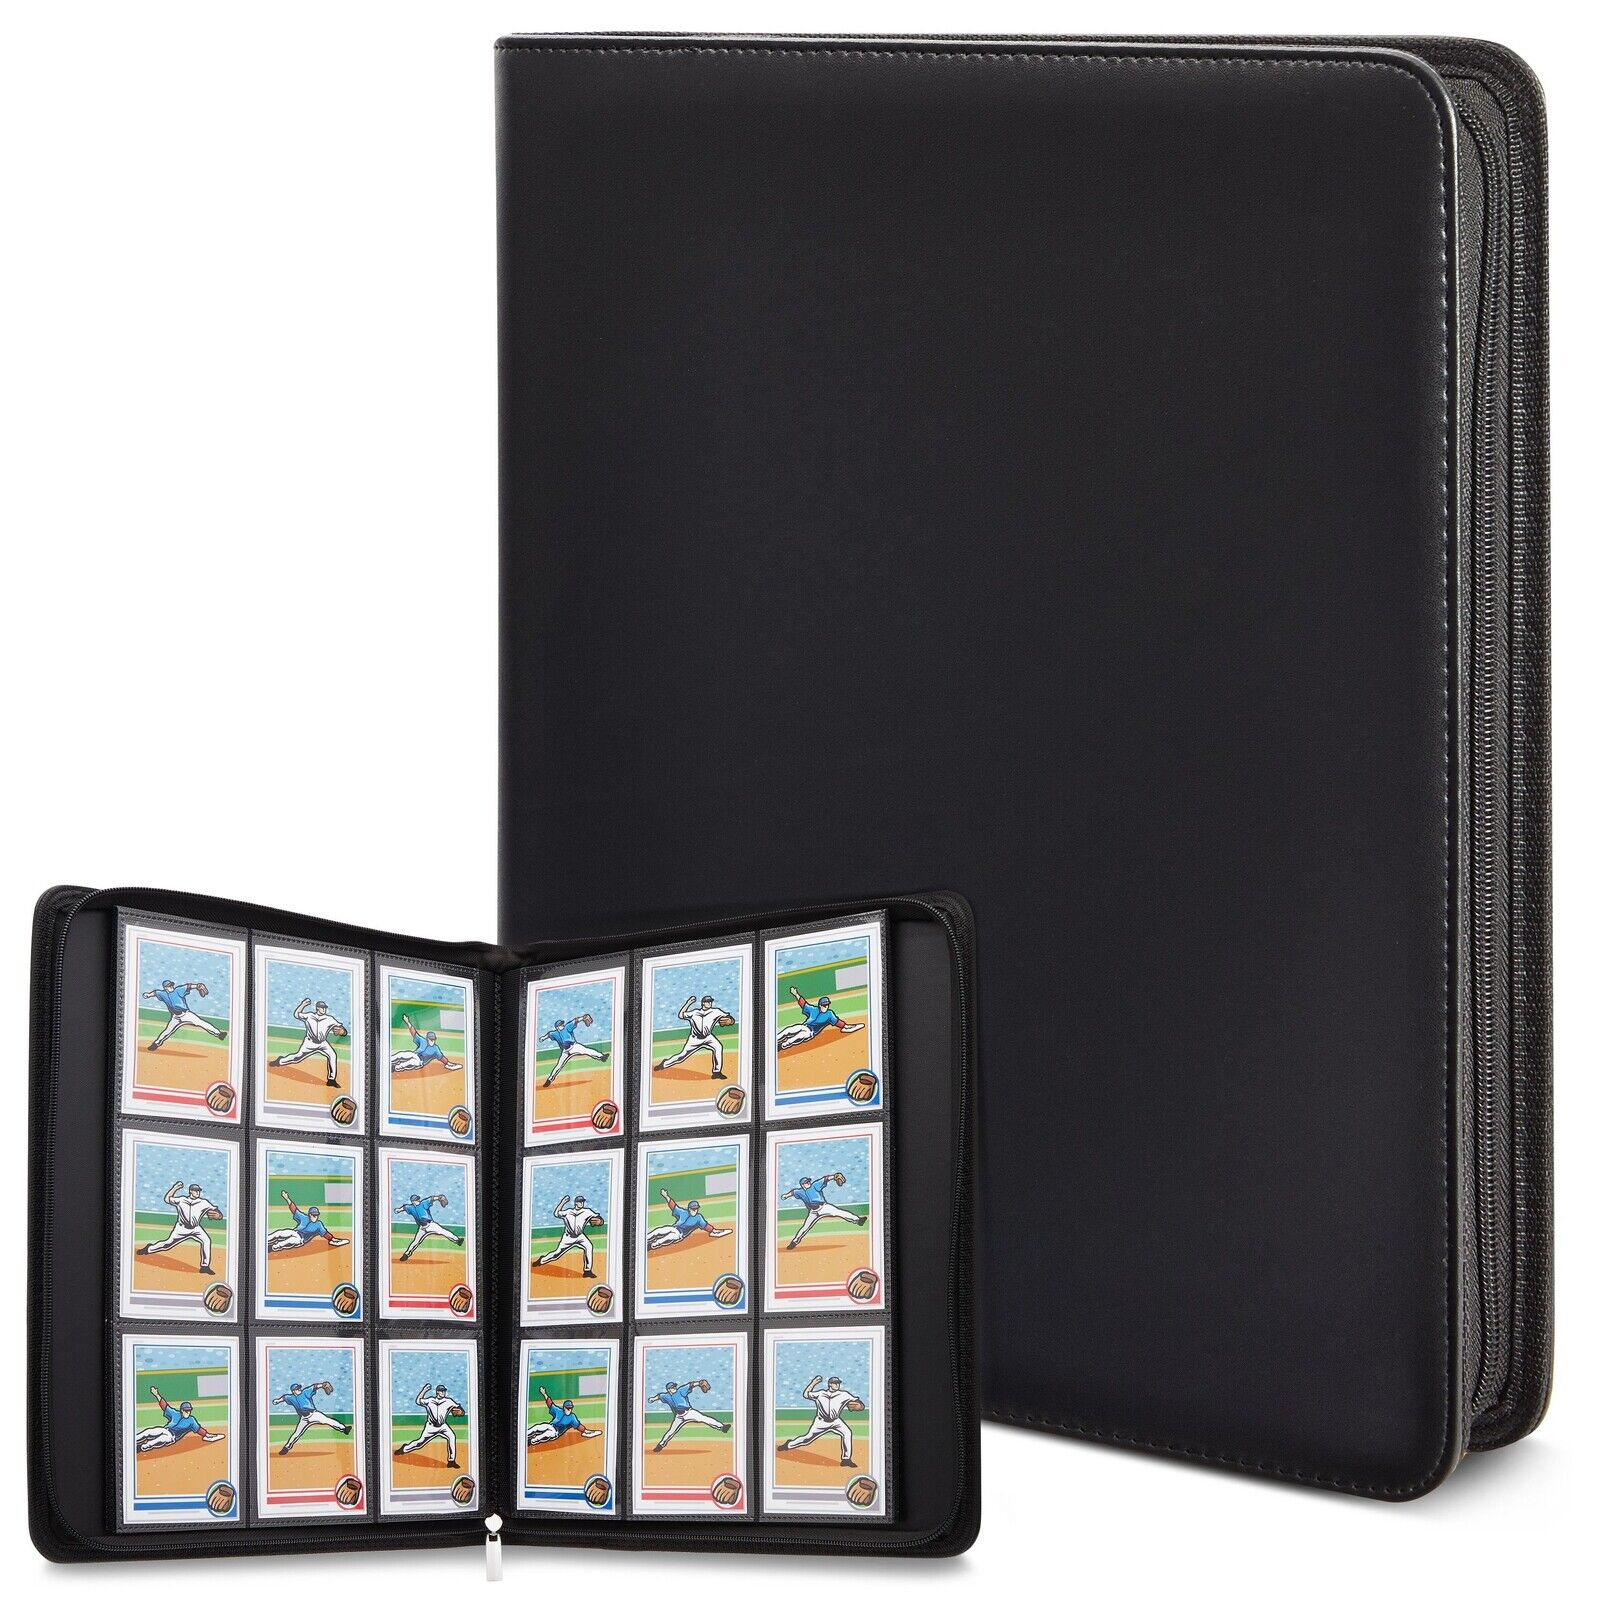 360 Card Pocket Binder with Zipper 9 Pocket Trading Cards Album Folder, Black